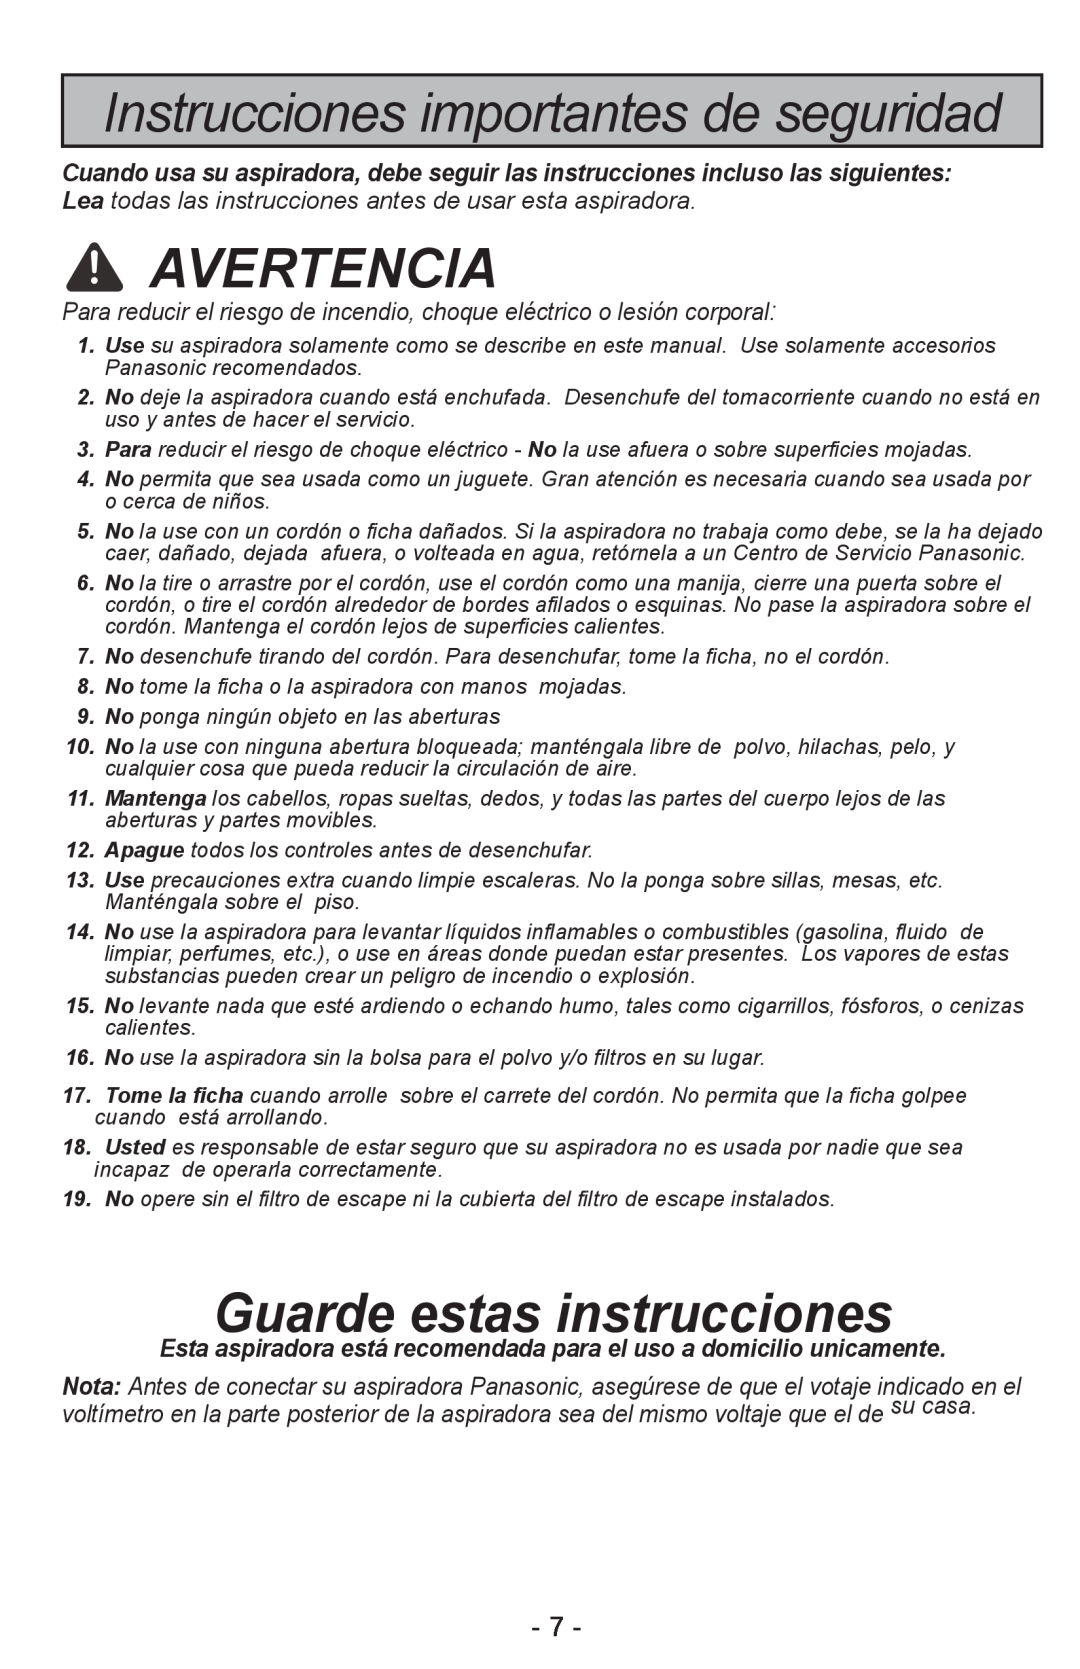 Panasonic MC-CL310 manual Instrucciones importantes de seguridad, Avertencia, Guarde estas instrucciones 